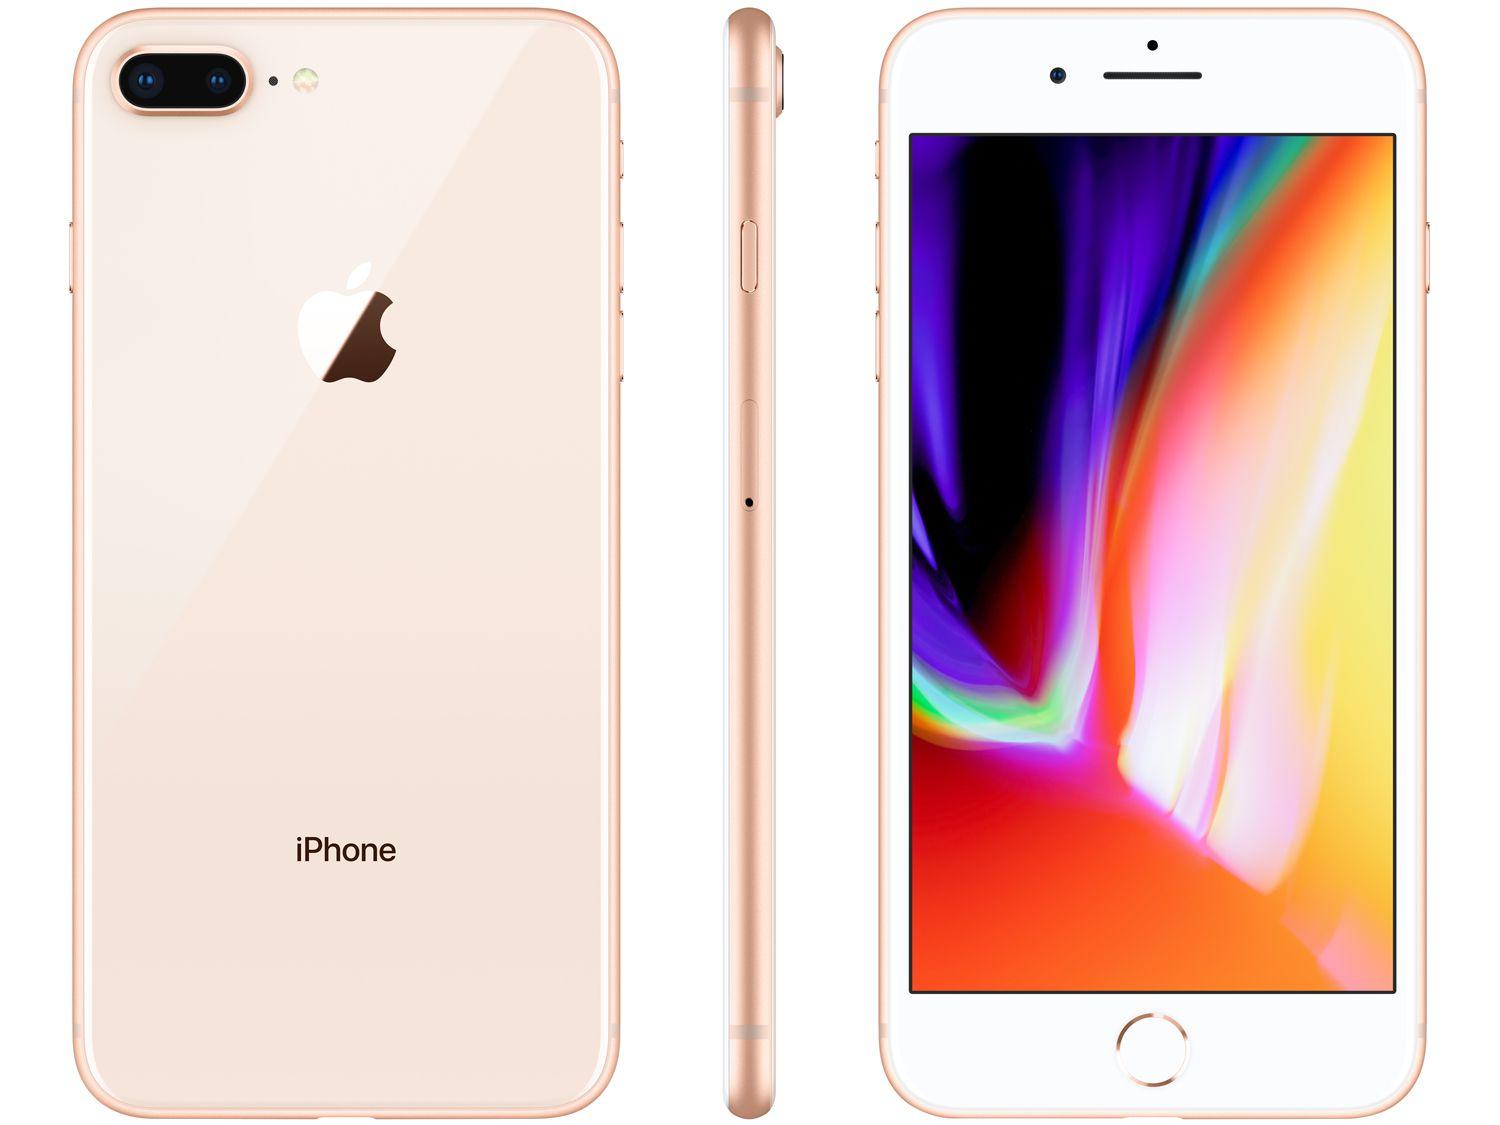 iPhone 8 Plus Apple 128GB Dourado 5,5” 12MP iOS iPhone